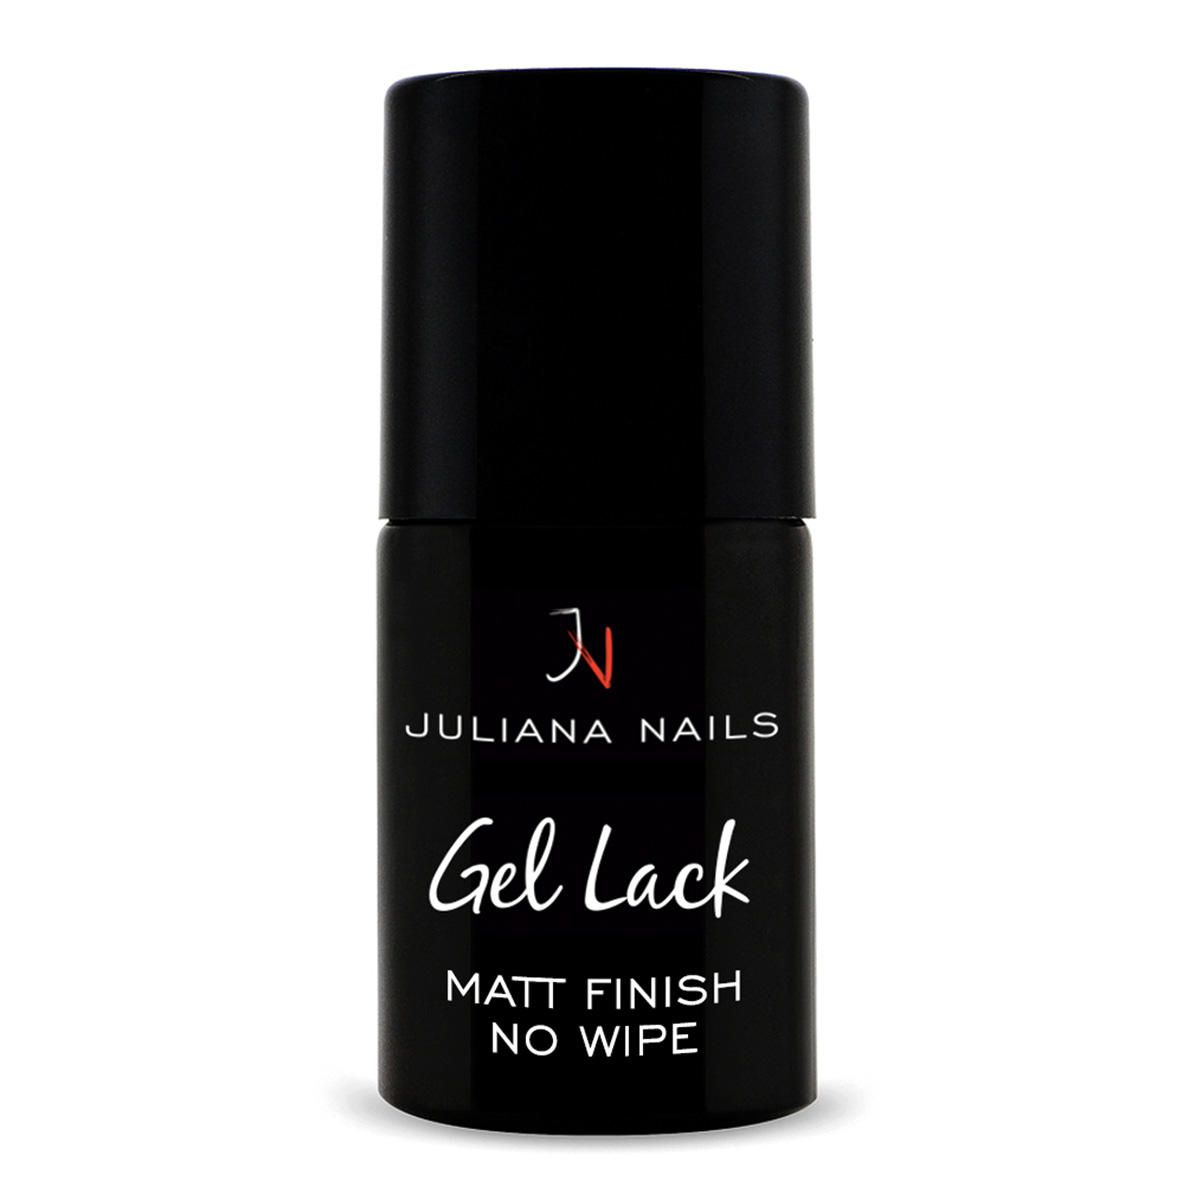 Juliana Nails Gel Lack Matt Finish - No Wipe  - 1